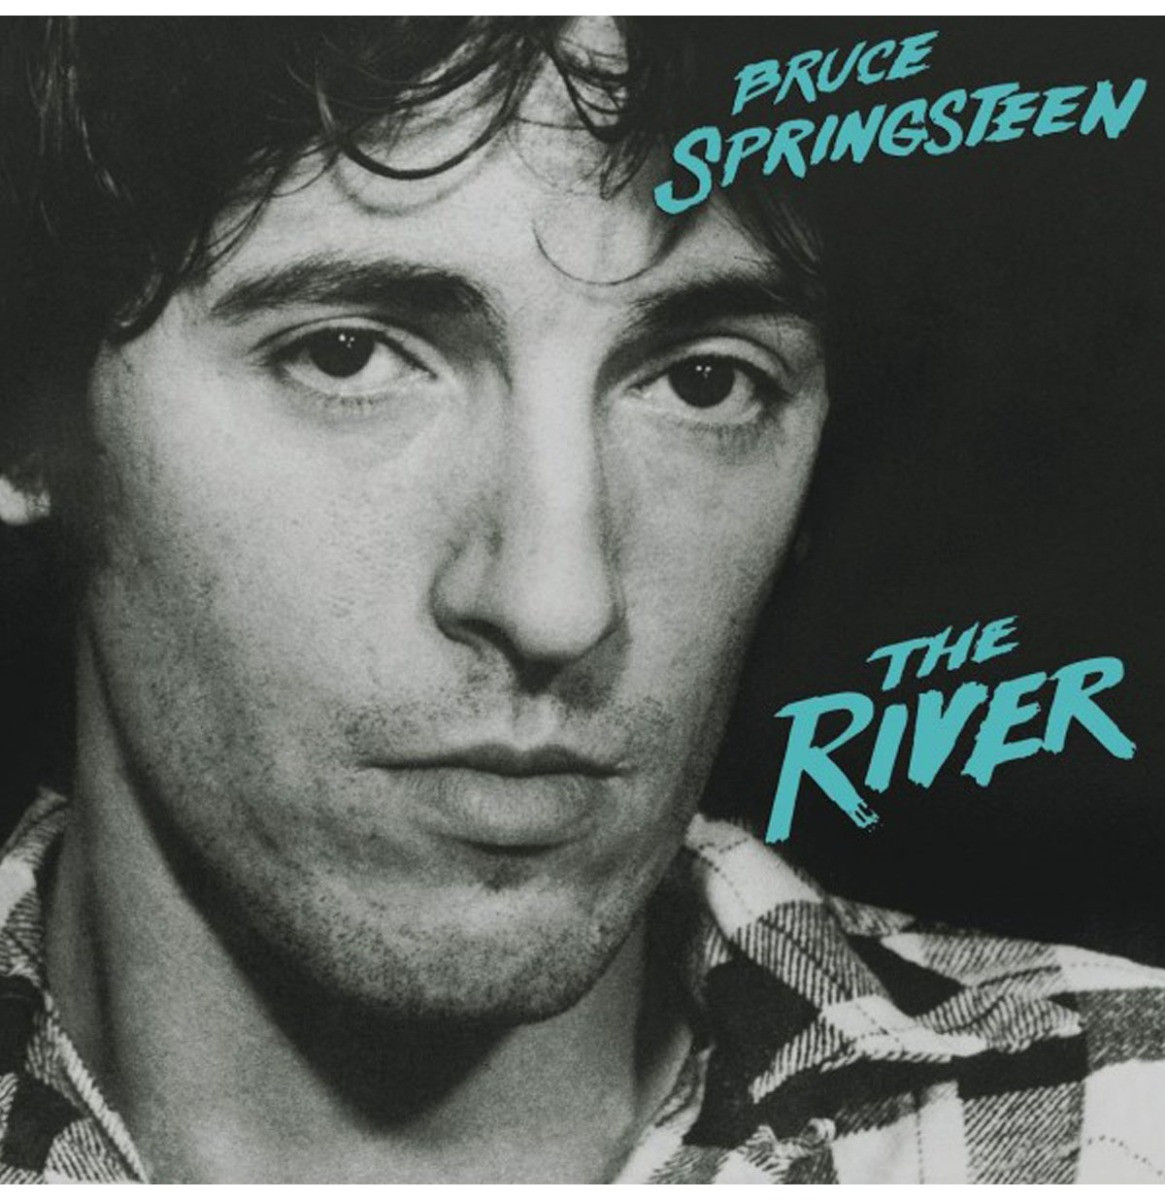 Bruce Springsteen - River 2LP